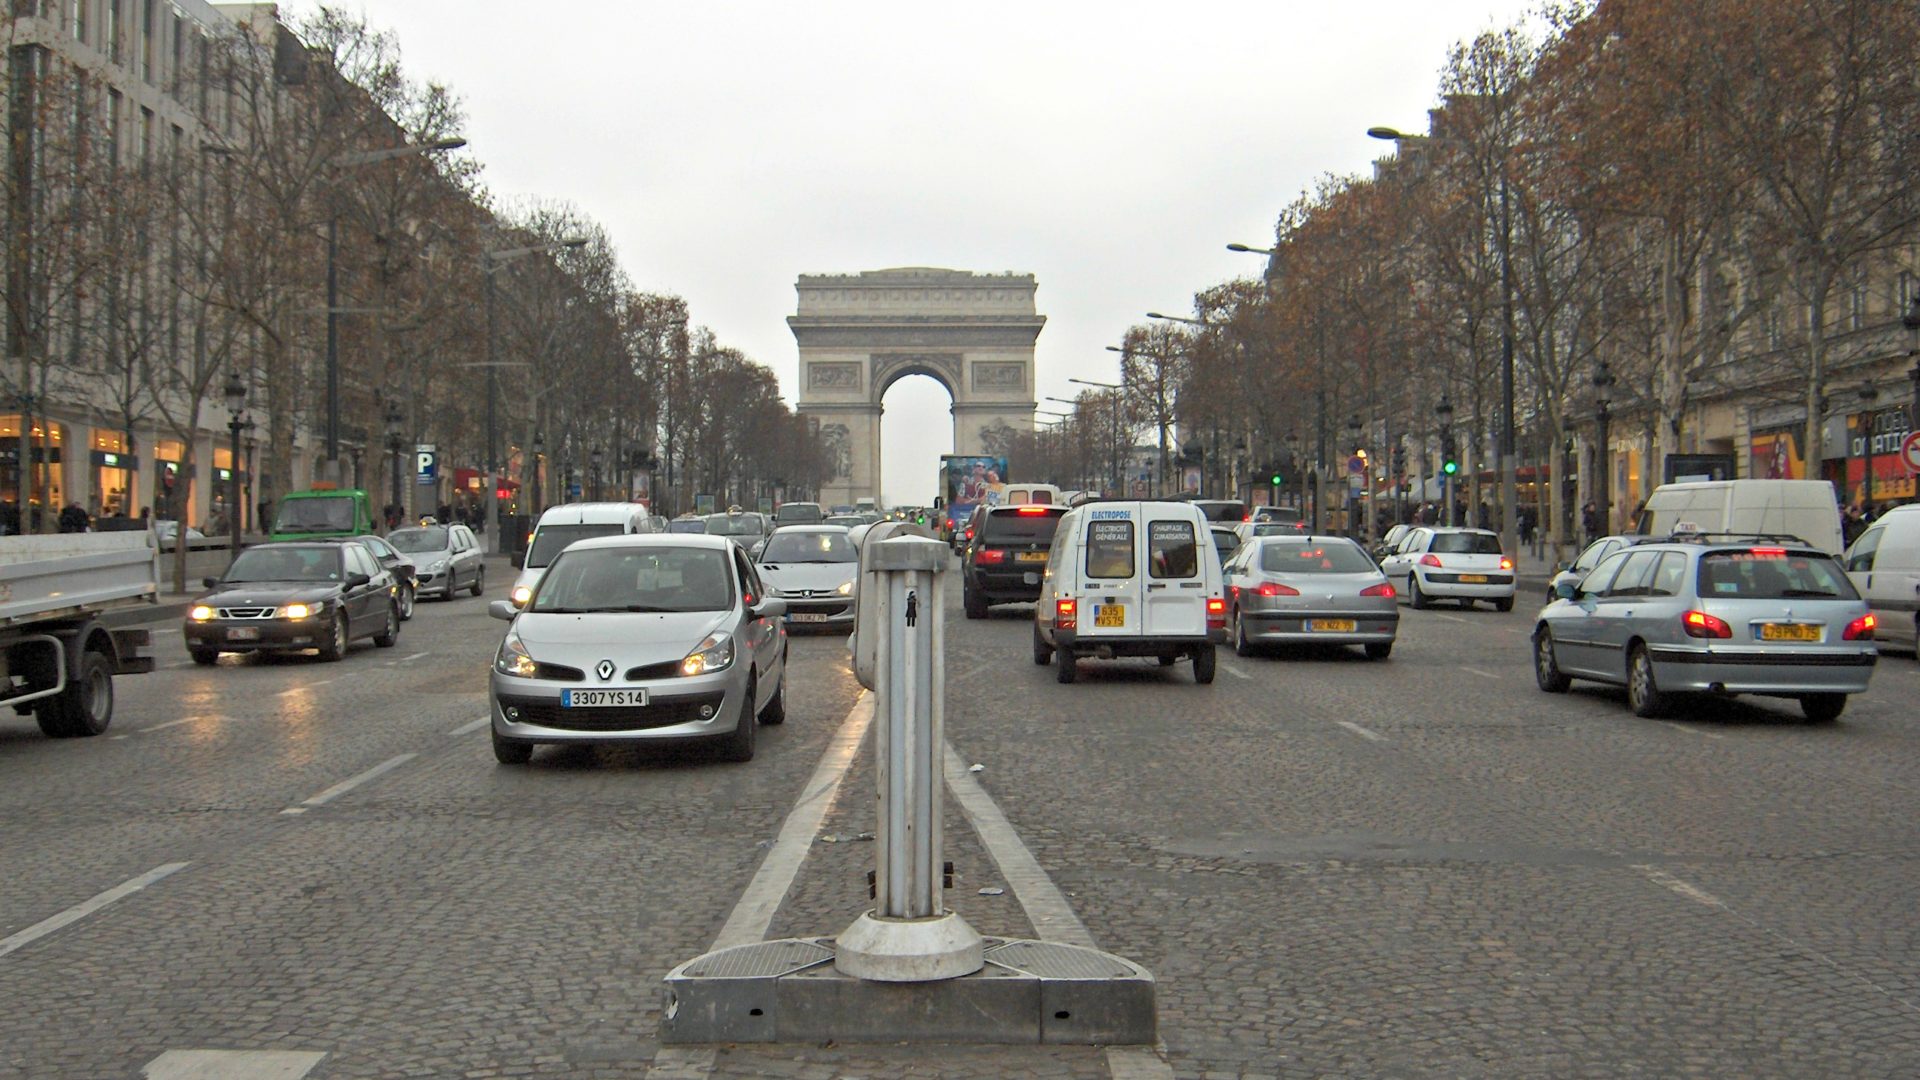 L'attaque a eu lieu sur le boulevard très fréquenté des Champs-Elysées (Photo:Joe Shlabotnik/Flickr/CC BY 2.0)